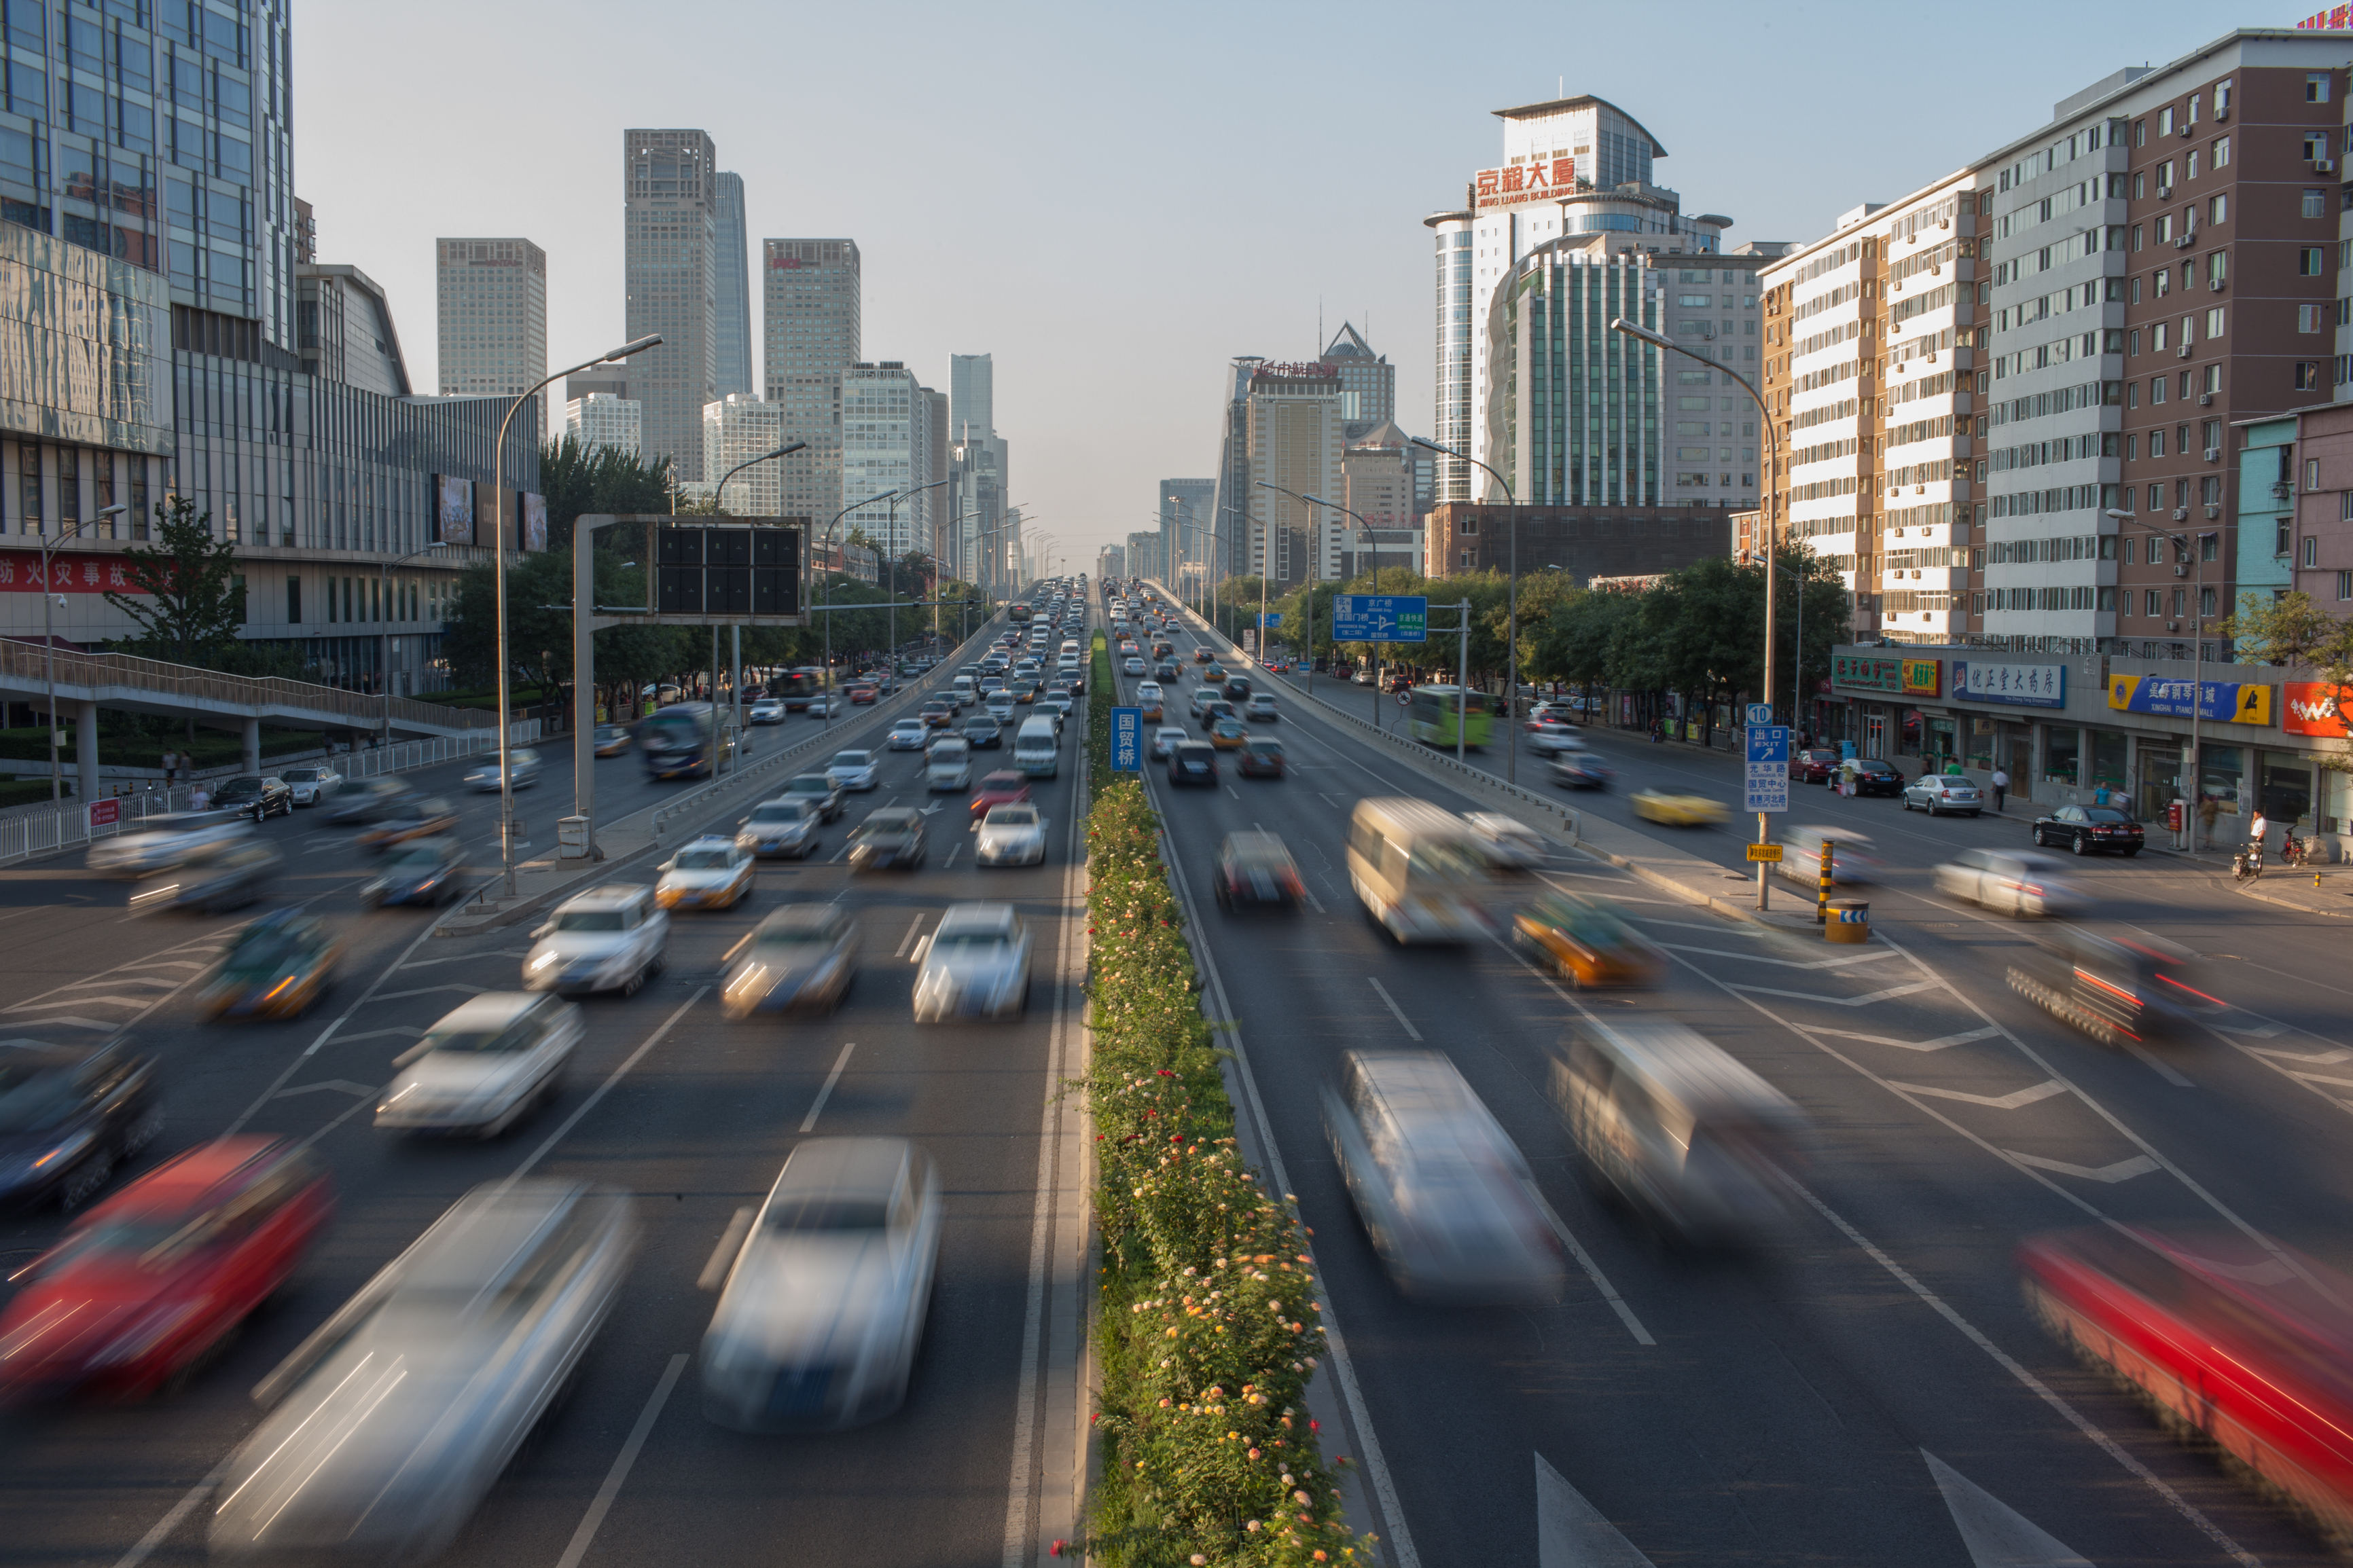 Sunday Afternoon Traffic in Beijing by Jens Schott Knudsen